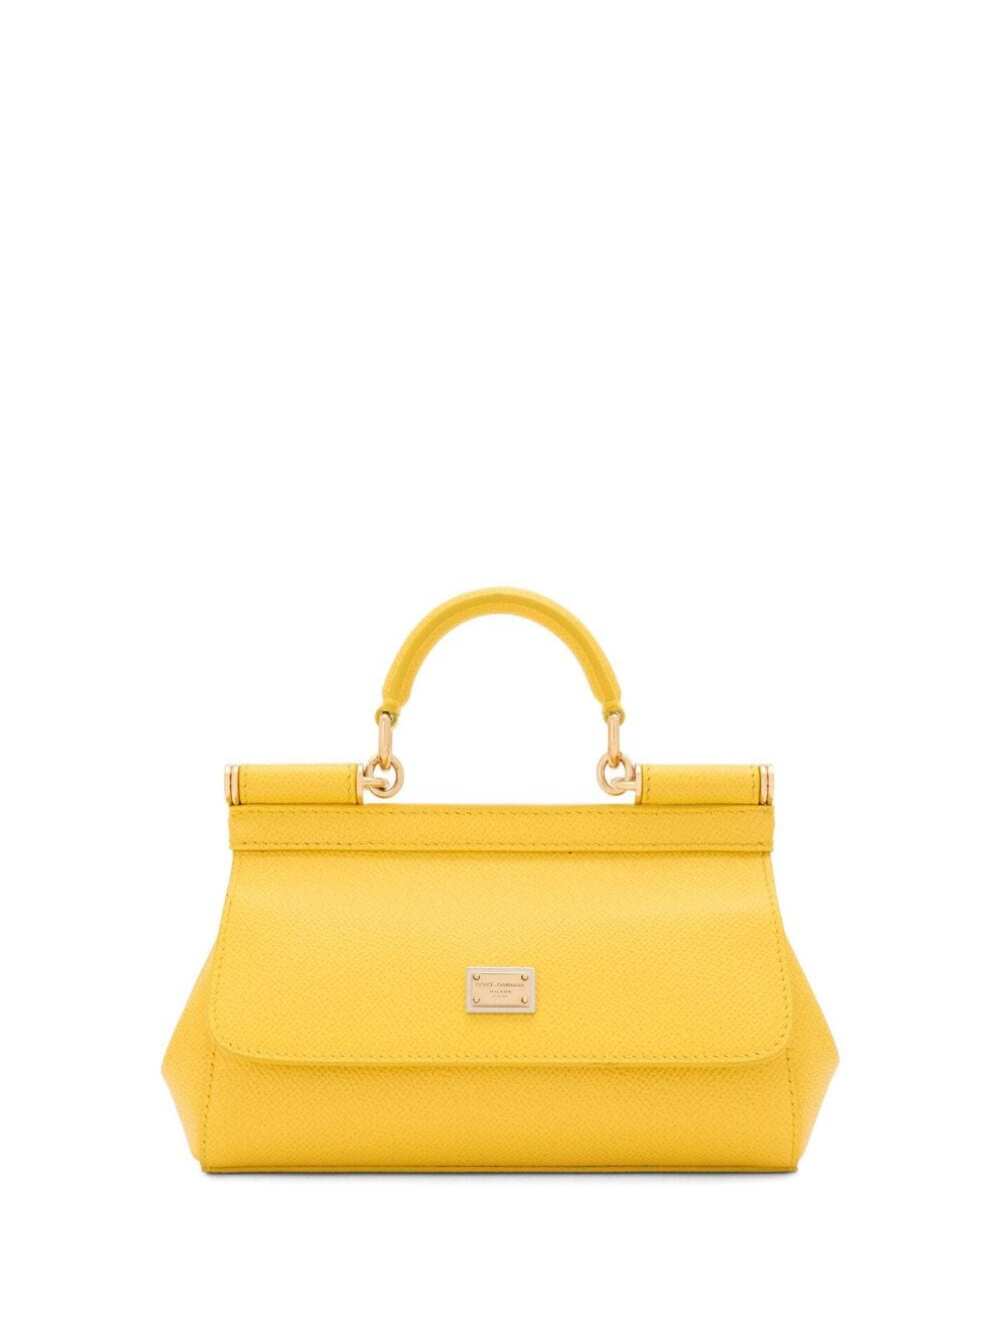 Dolce & Gabbana Sicily Handbag Long In Yellow